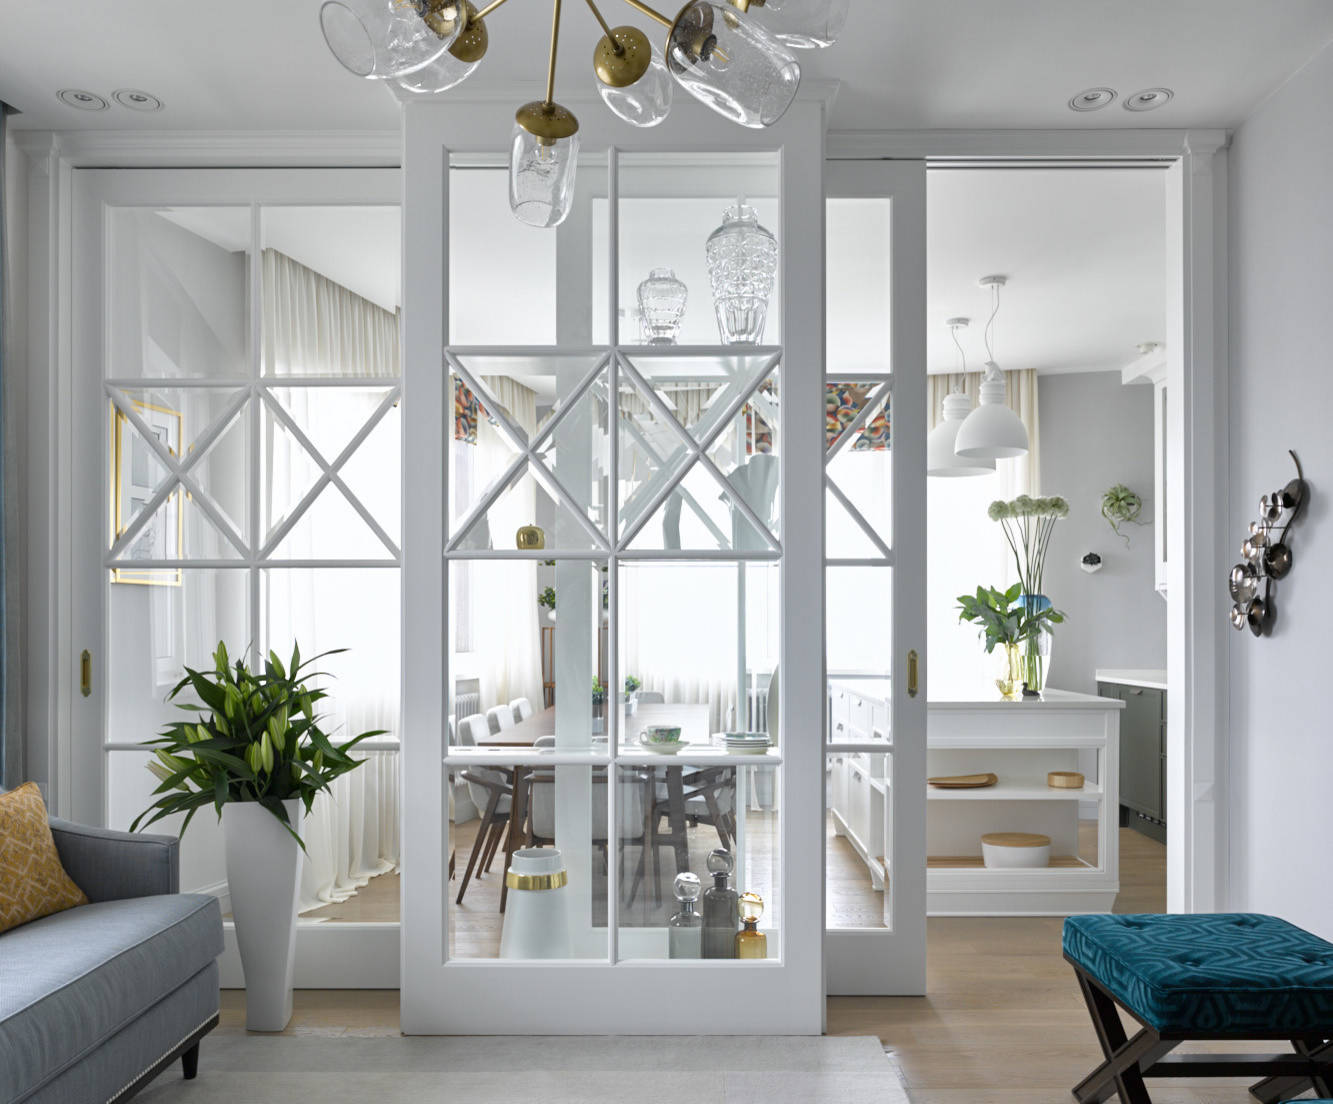 Как оформить дизайн интерьера кухни-гостиной 17 кв м?